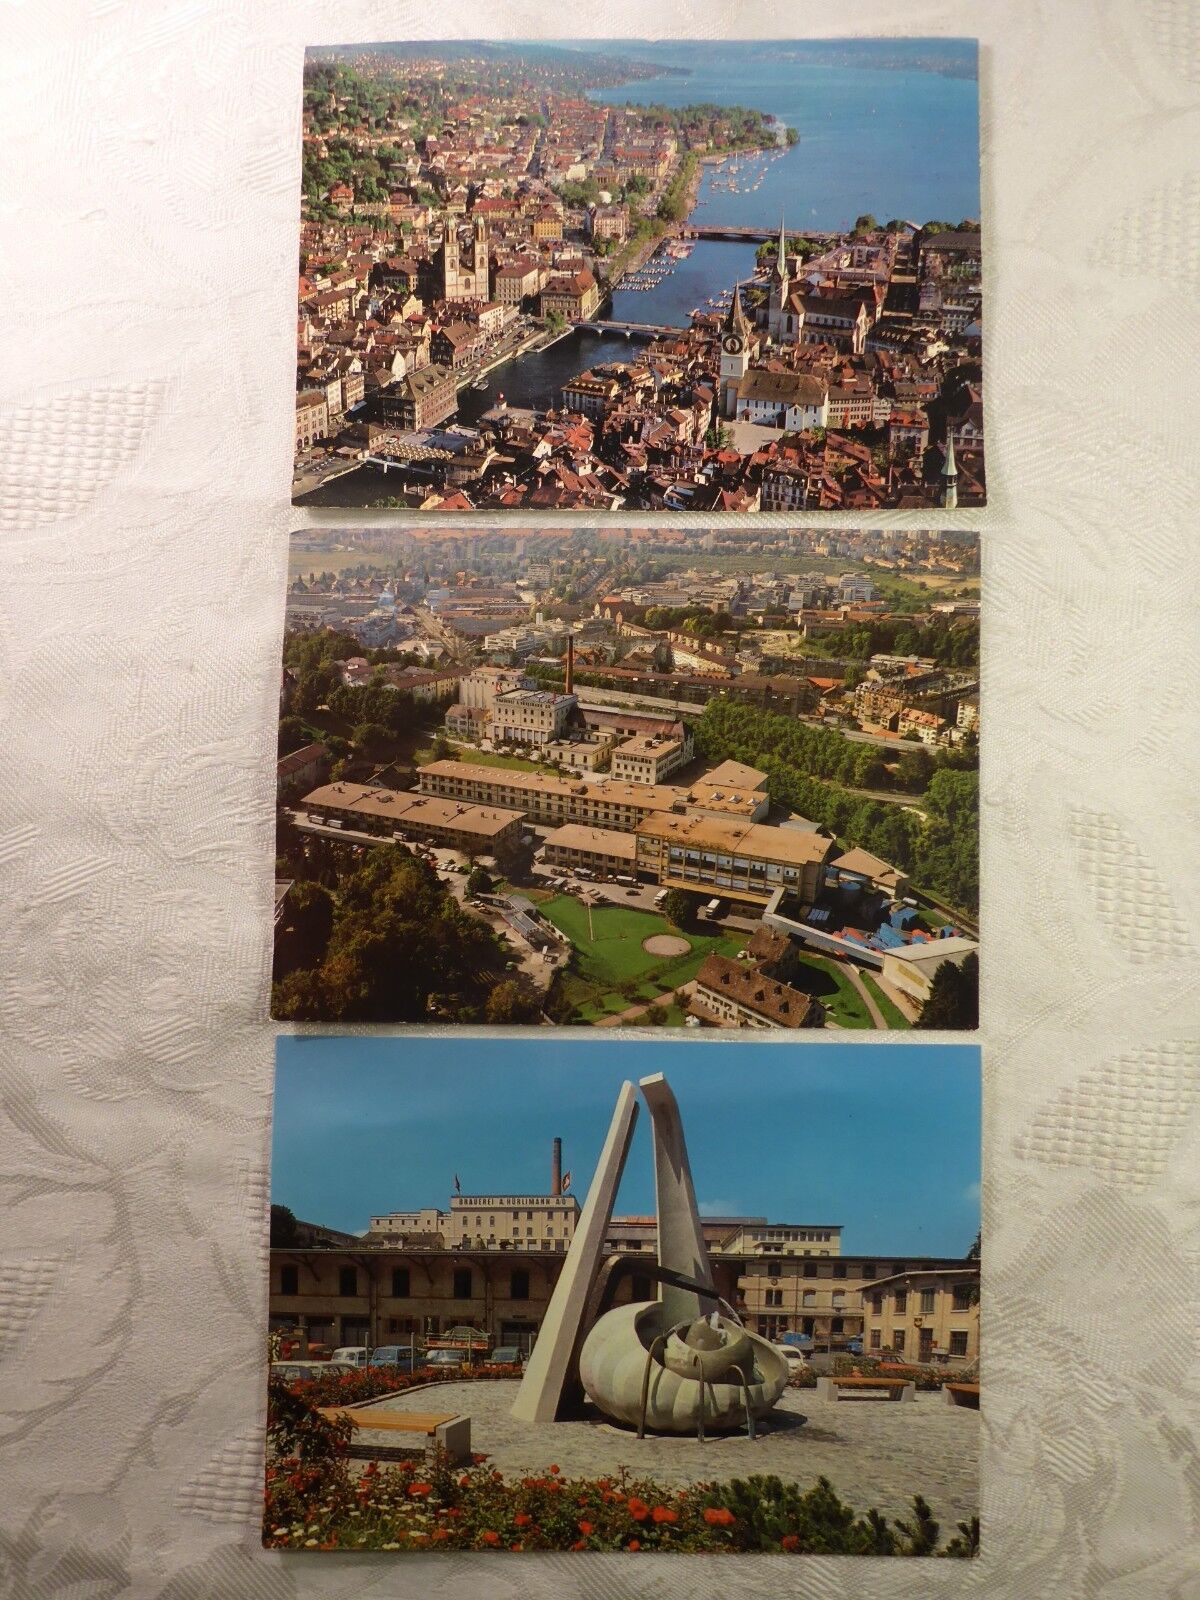 3x Ak Postcard Zurich Flugaufnahme City Brewery Hürlimann Aqui-Brunnen